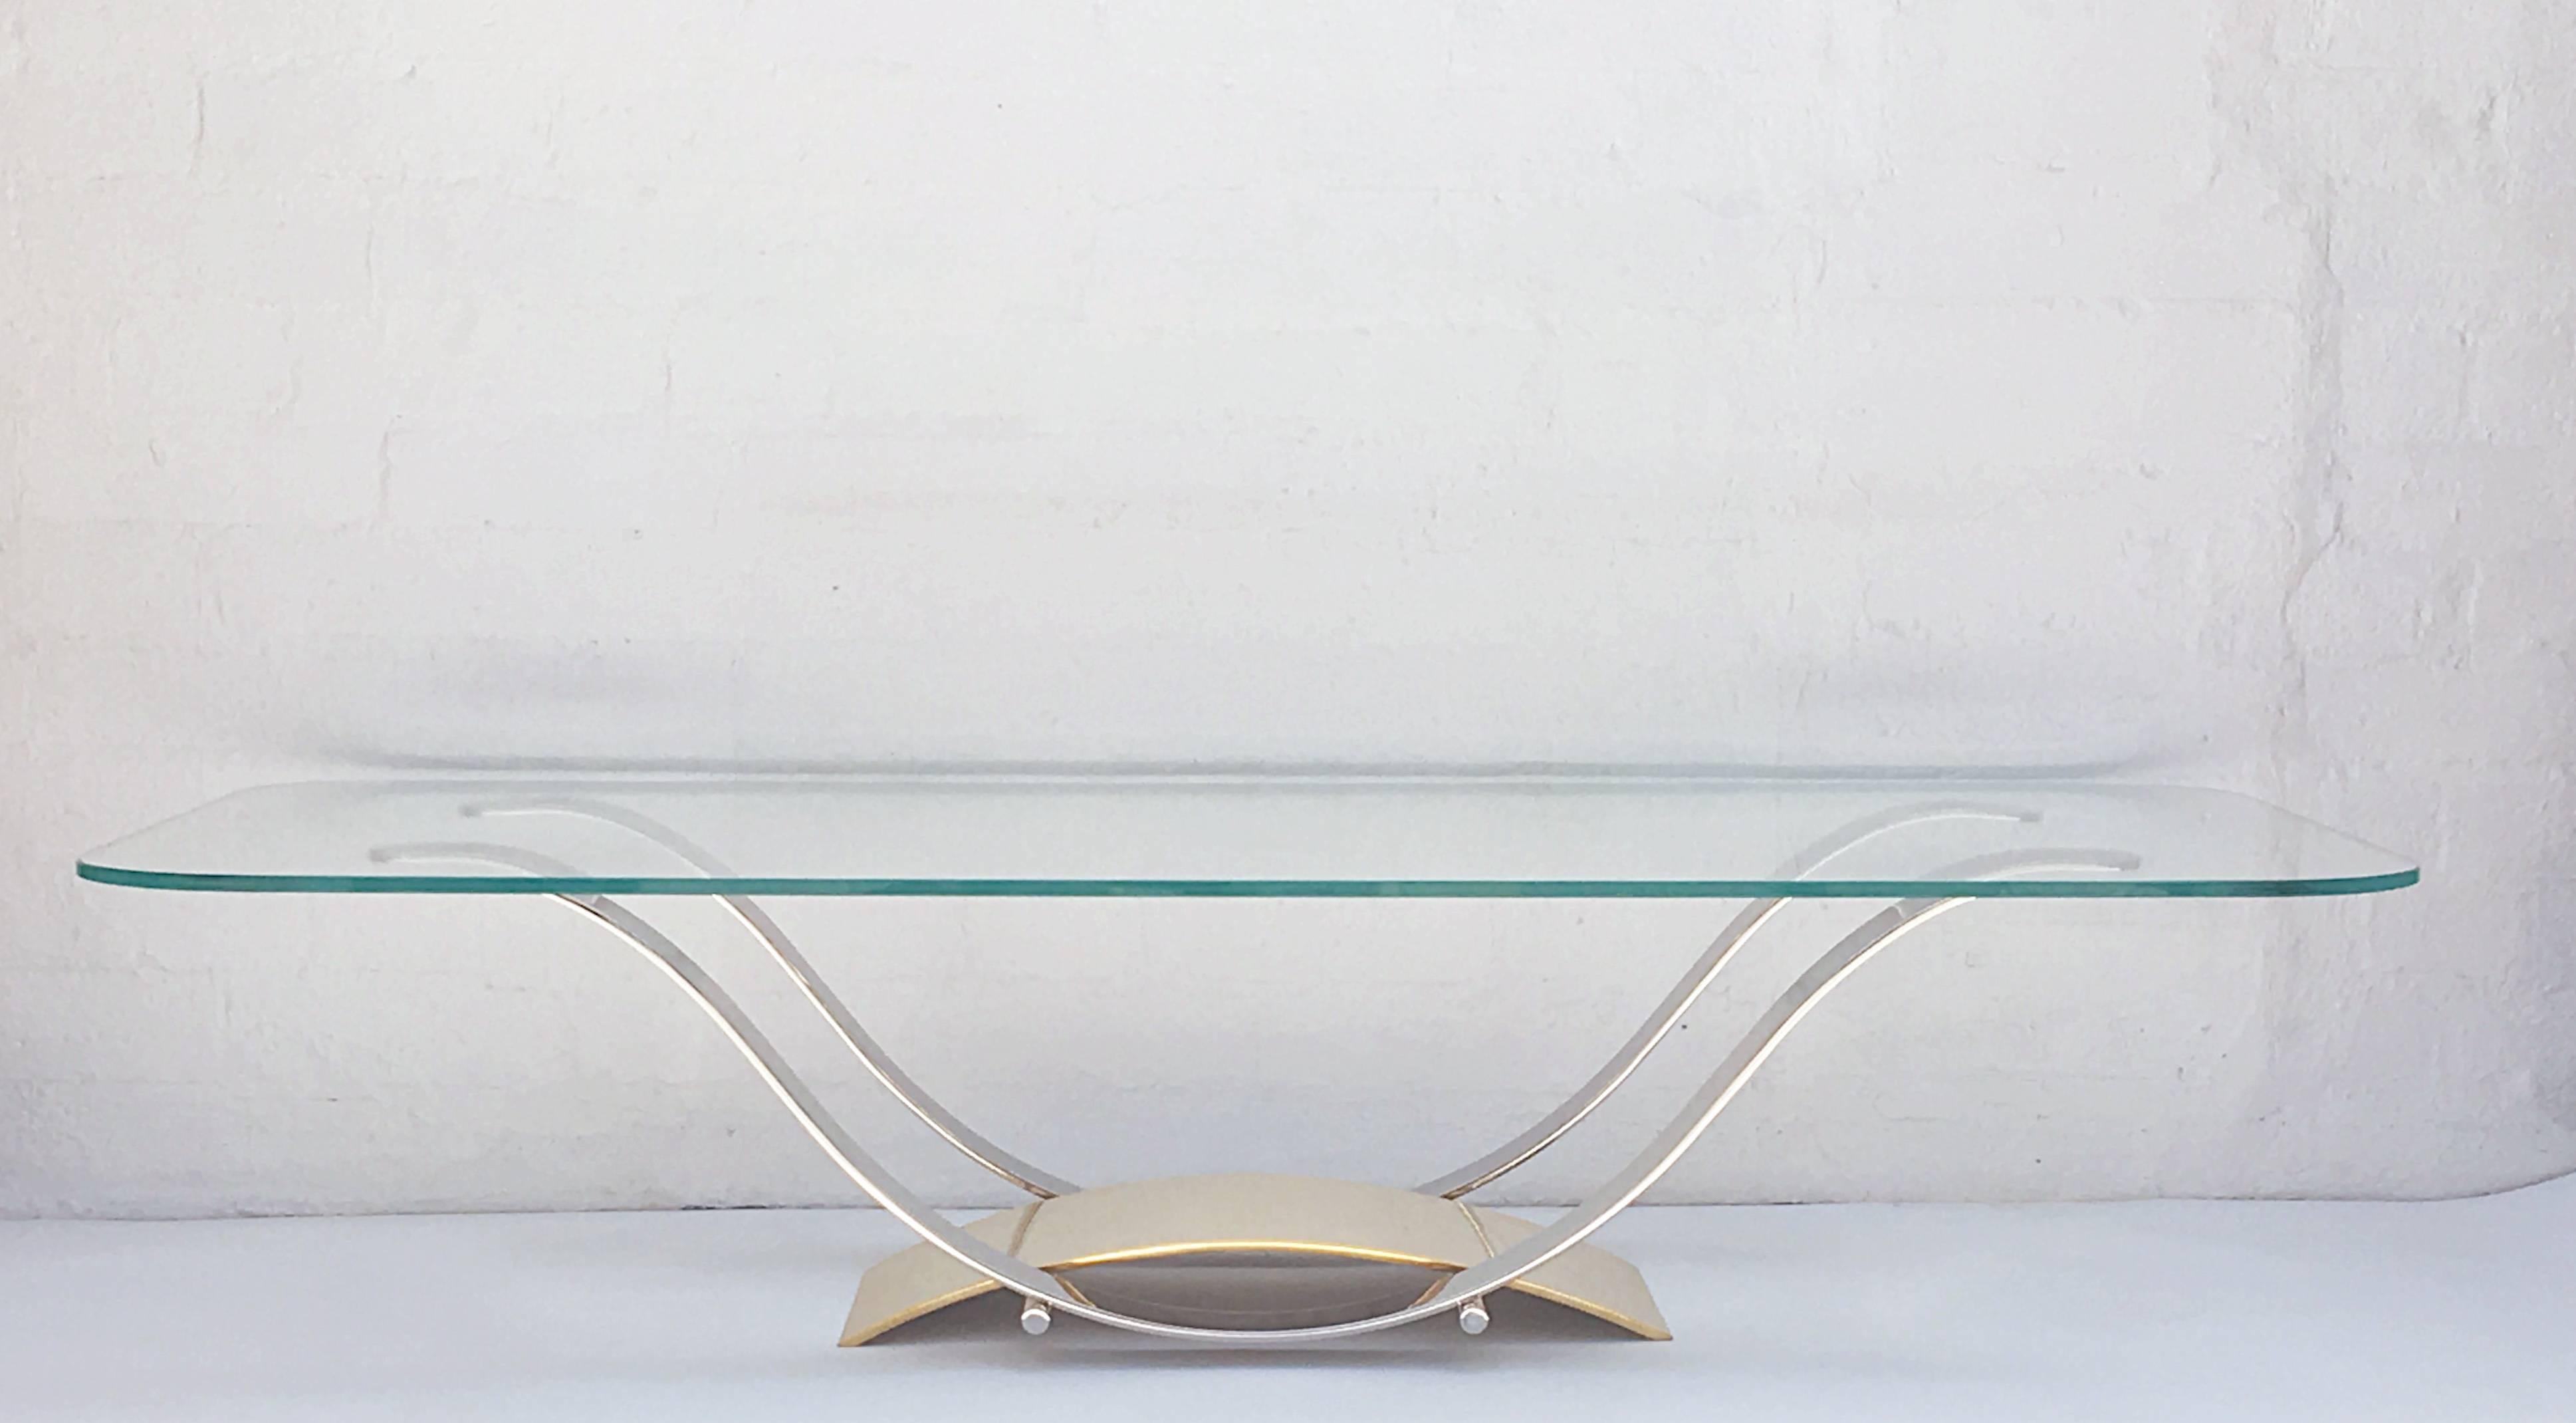 Erstaunlich gestalteter und gut konstruierter Cocktailtisch.
Der Tisch ist aus massivem rostfreiem Stahl und massivem Messing gefertigt.
Er ist so konstruiert, dass man keine der Schrauben sehen kann, die den Tisch zusammenhalten.
Neu